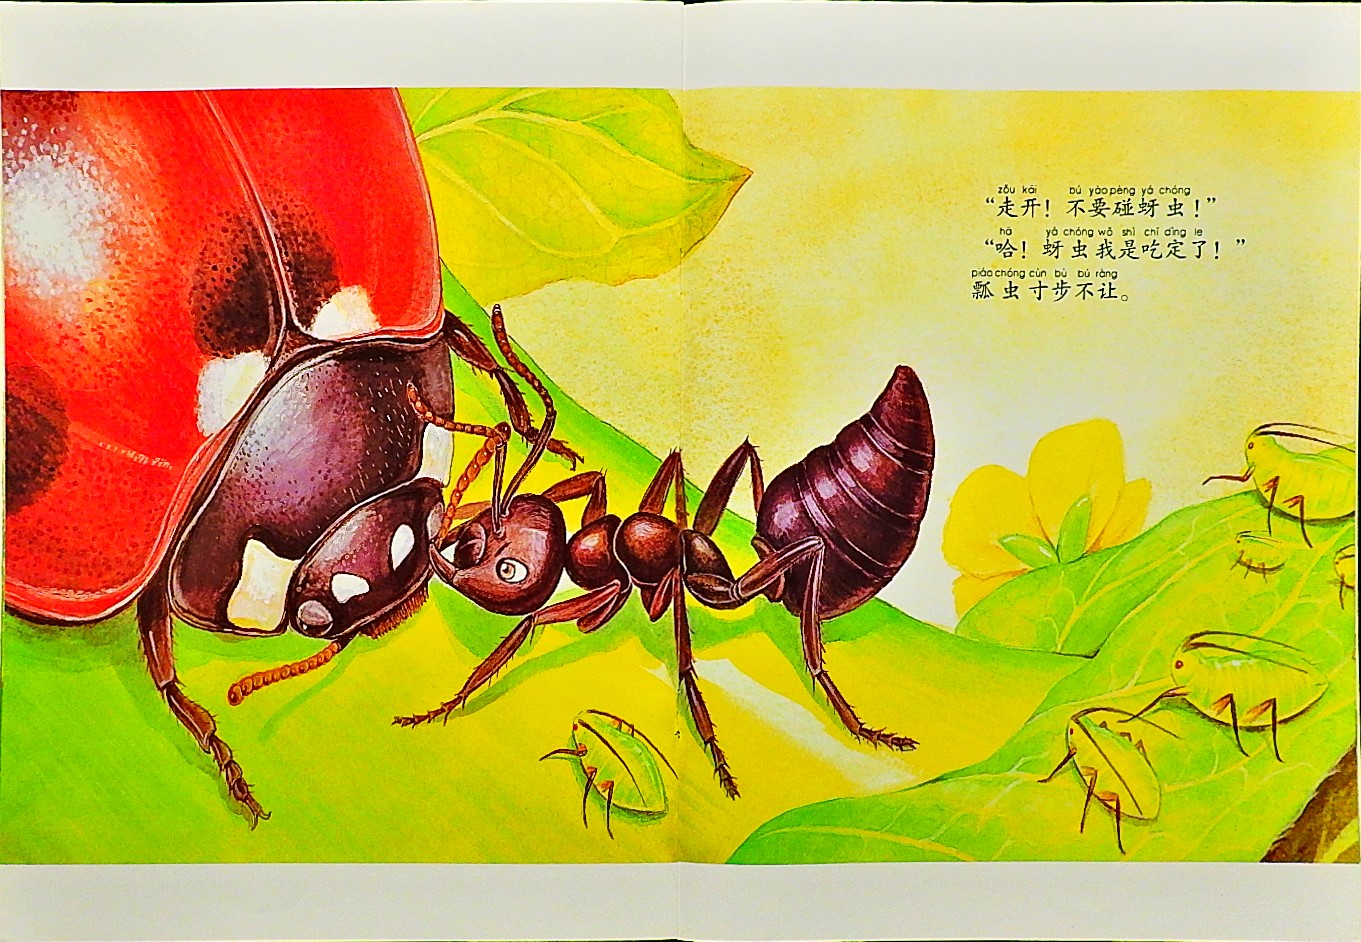 勇敢的小蚂蚁 (09),绘本,绘本故事,绘本阅读,故事书,童书,图画书,课外阅读